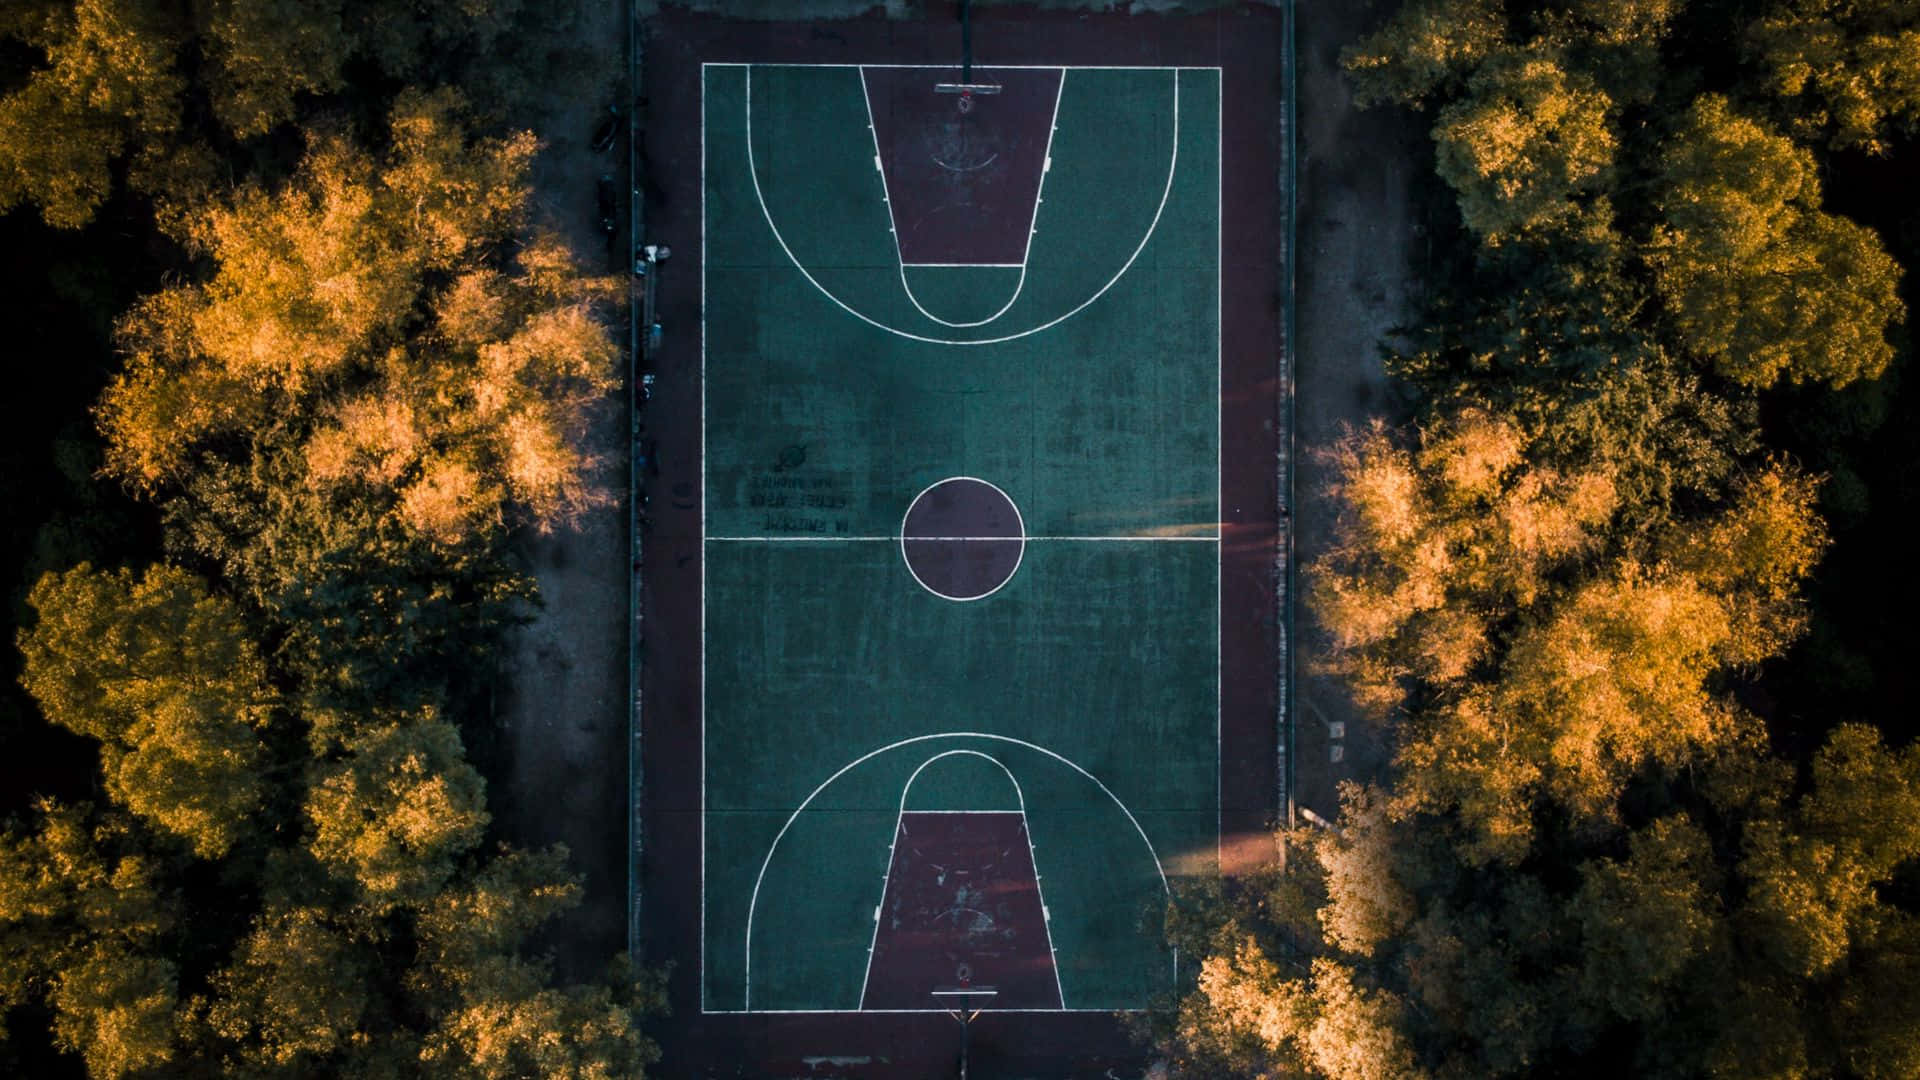 Luftansichteines Basketballplatzes Im Park